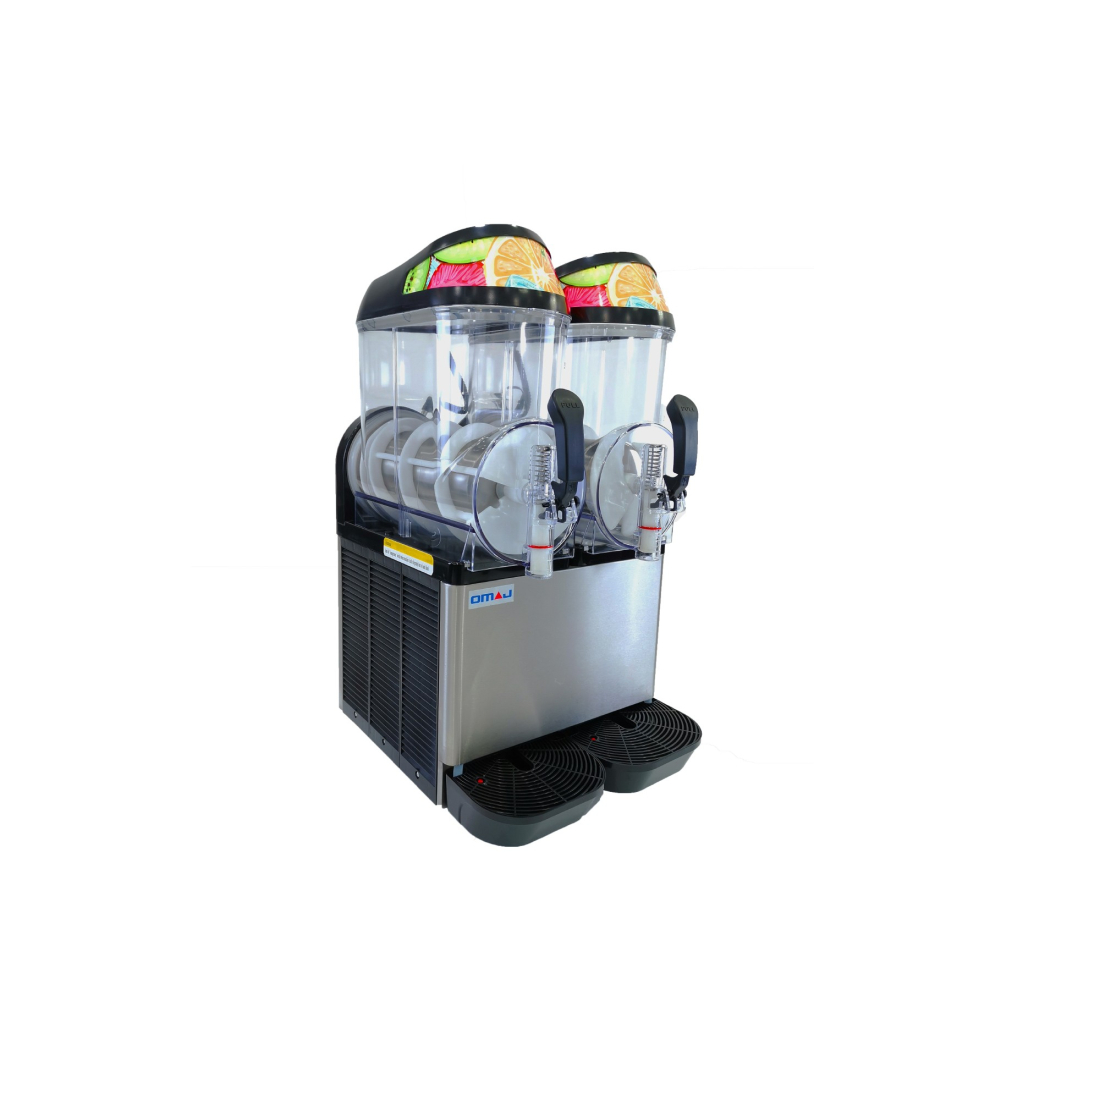 آلة صنع المشروبات المثلجة سلاش 2 حوض (Chill 2) من أوماج|mkayn|مكاين